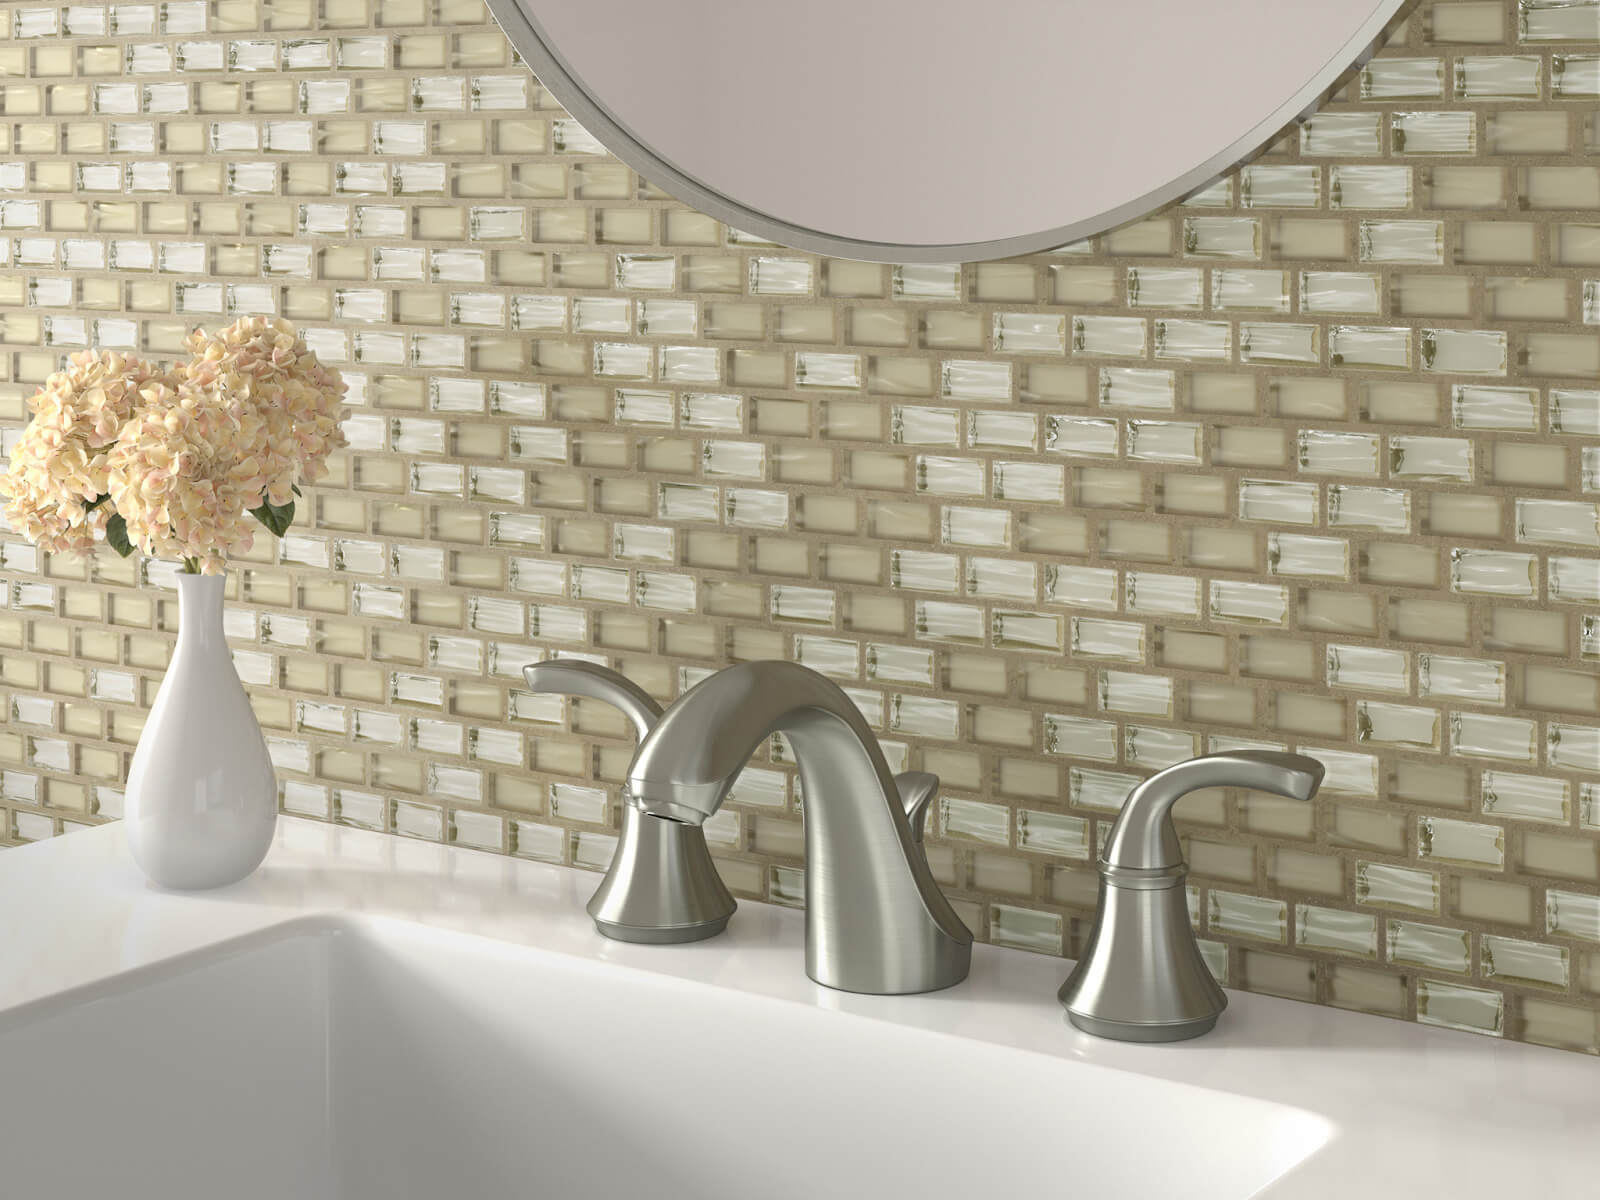 Golden-hued mosaic glass tile bathroom backsplash in a subway tile layout